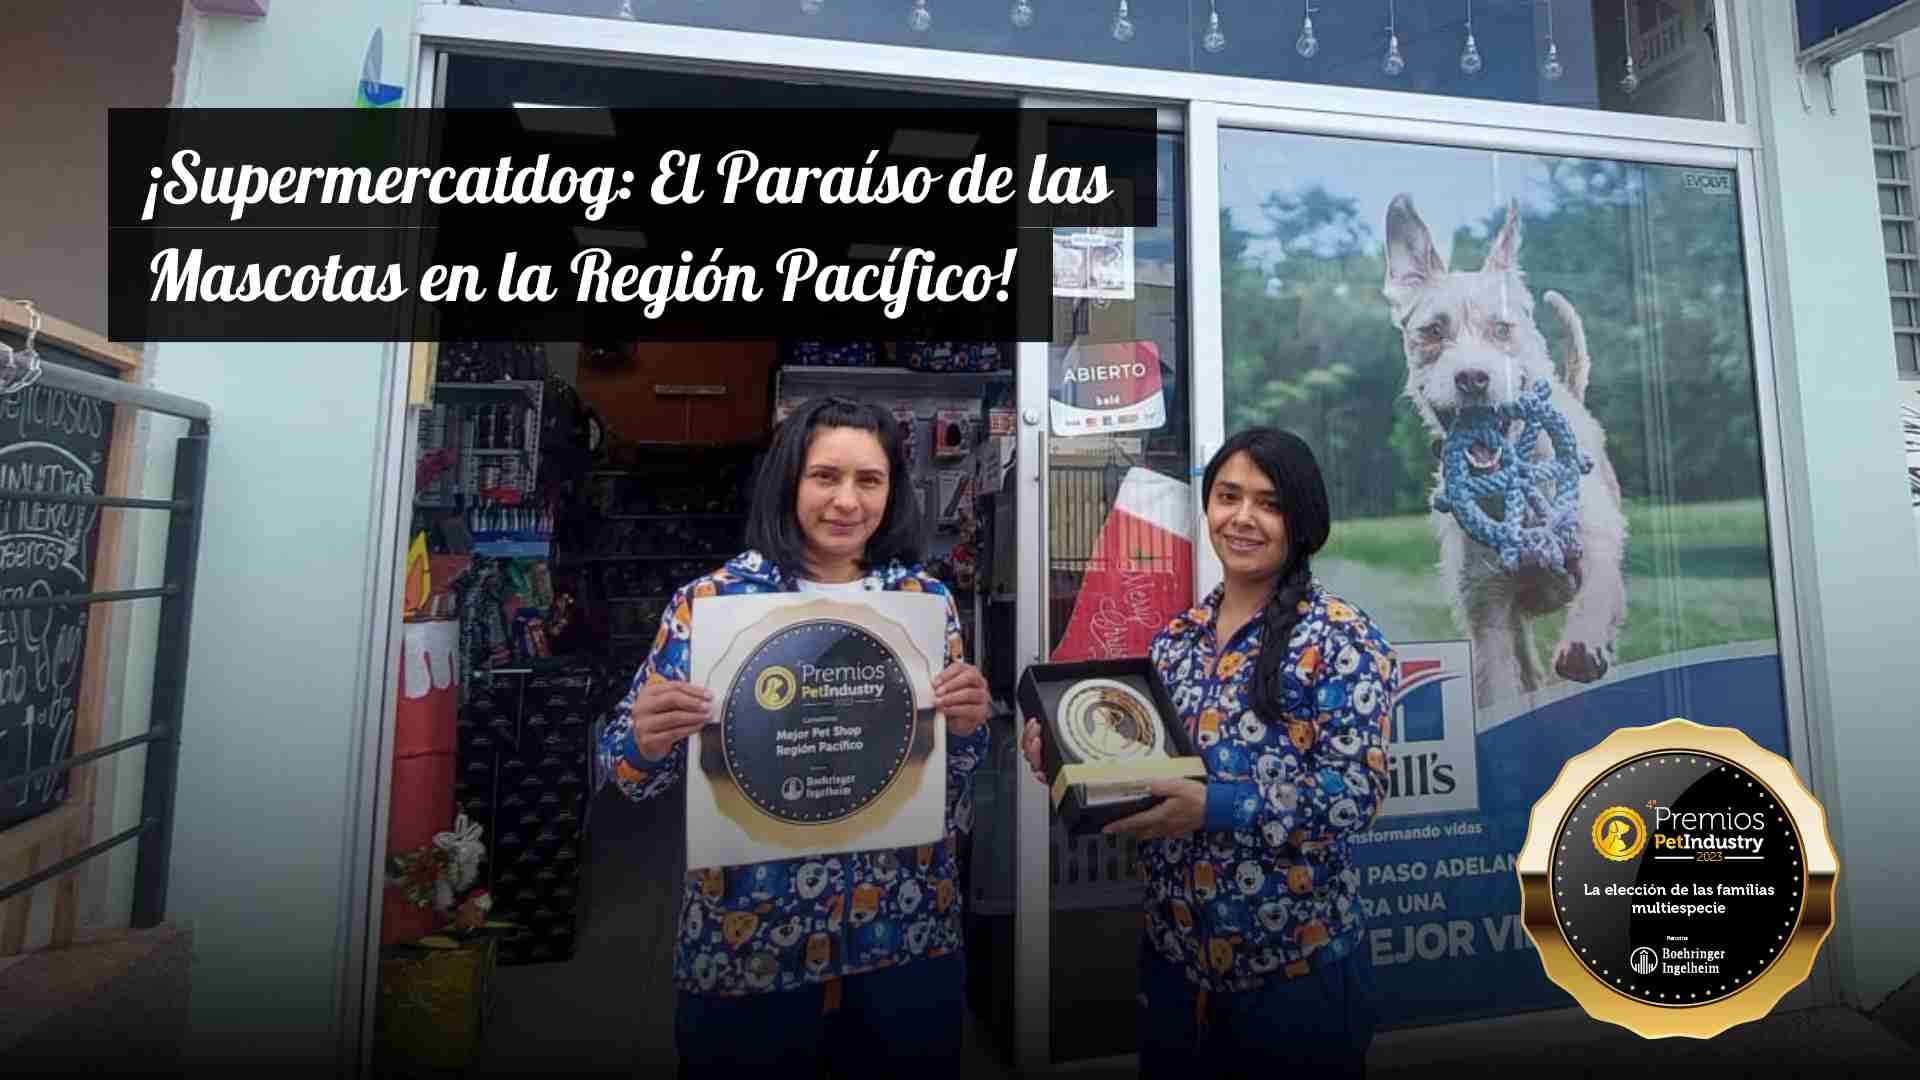 ¡Supermercatdog: El Paraíso de las Mascotas en la Región Pacífico!